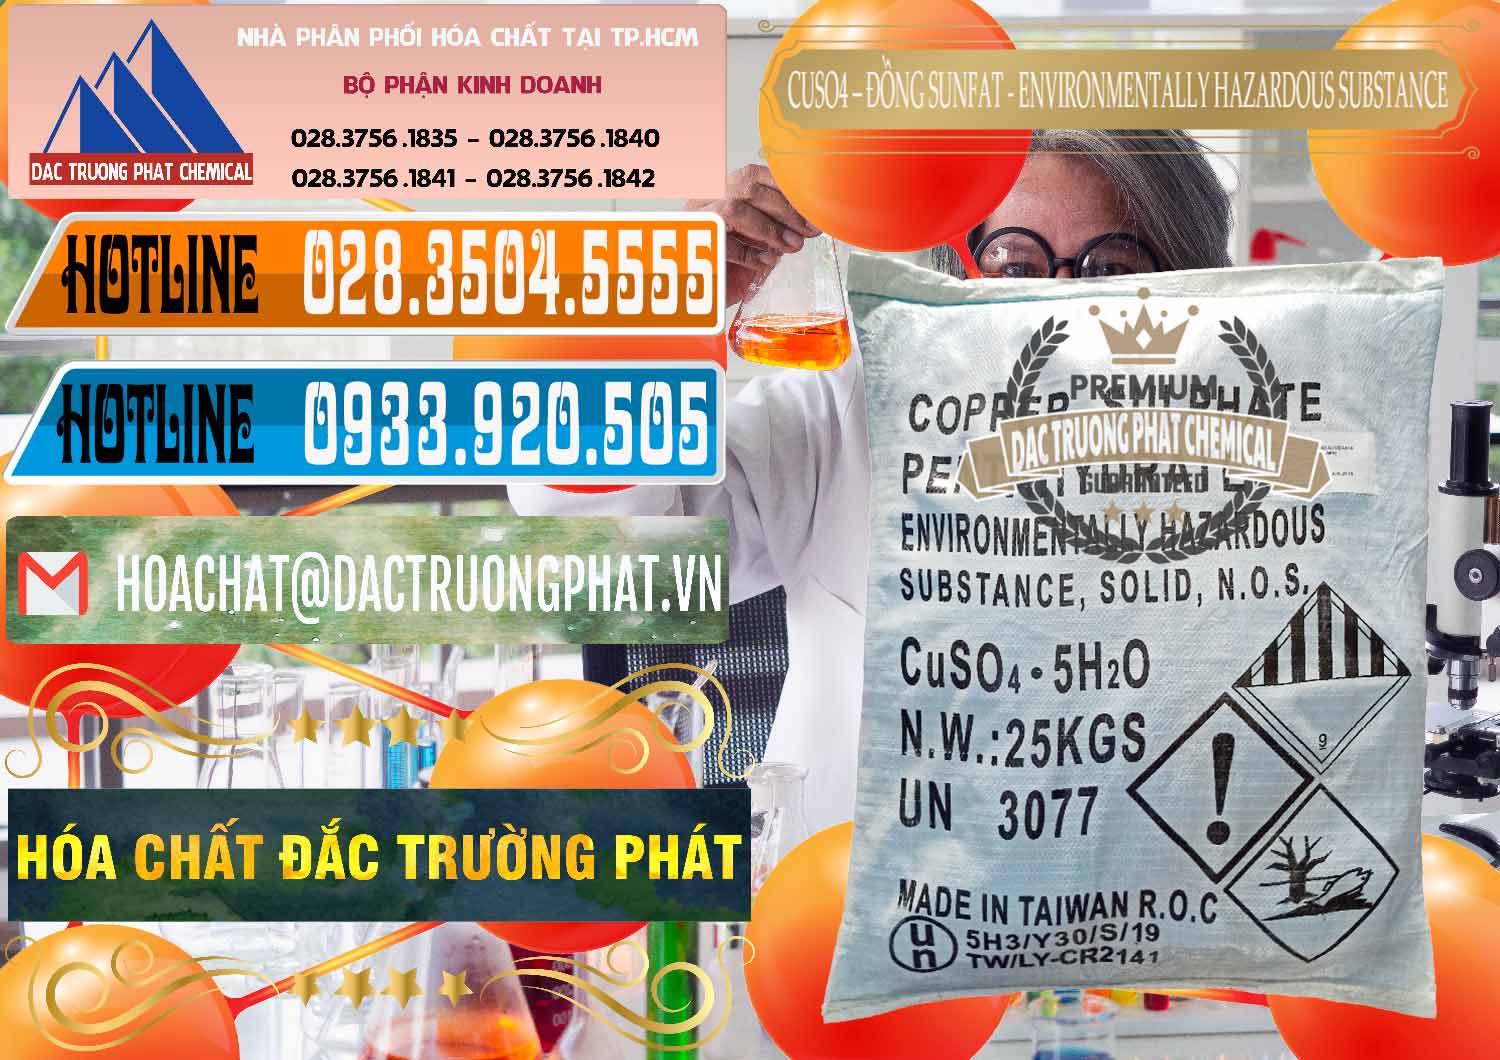 Công ty bán - phân phối CuSO4 – Đồng Sunfat Đài Loan Taiwan - 0059 - Cty chuyên cung cấp ( kinh doanh ) hóa chất tại TP.HCM - stmp.net